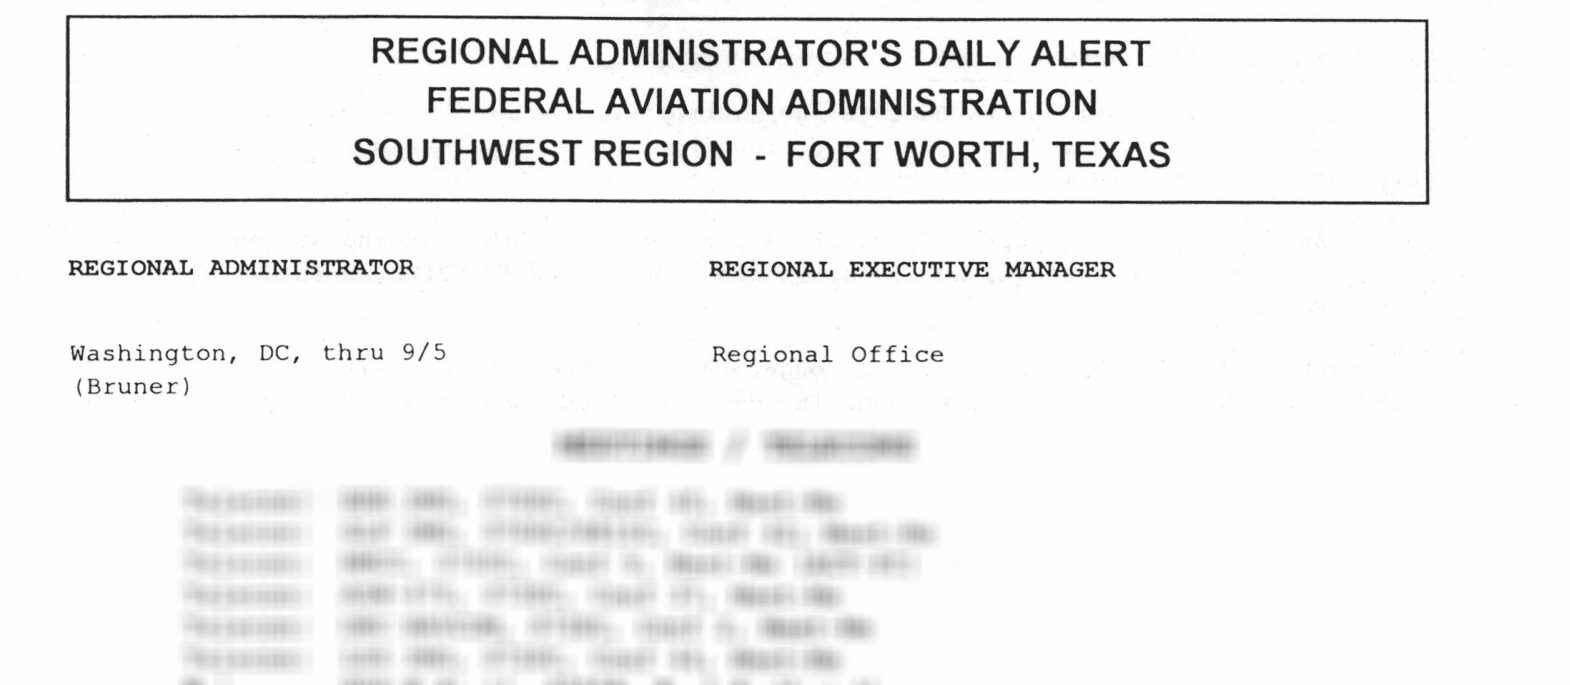 FAA Southwest Region’s “Regional Administrator’s Daily Alert” Logs